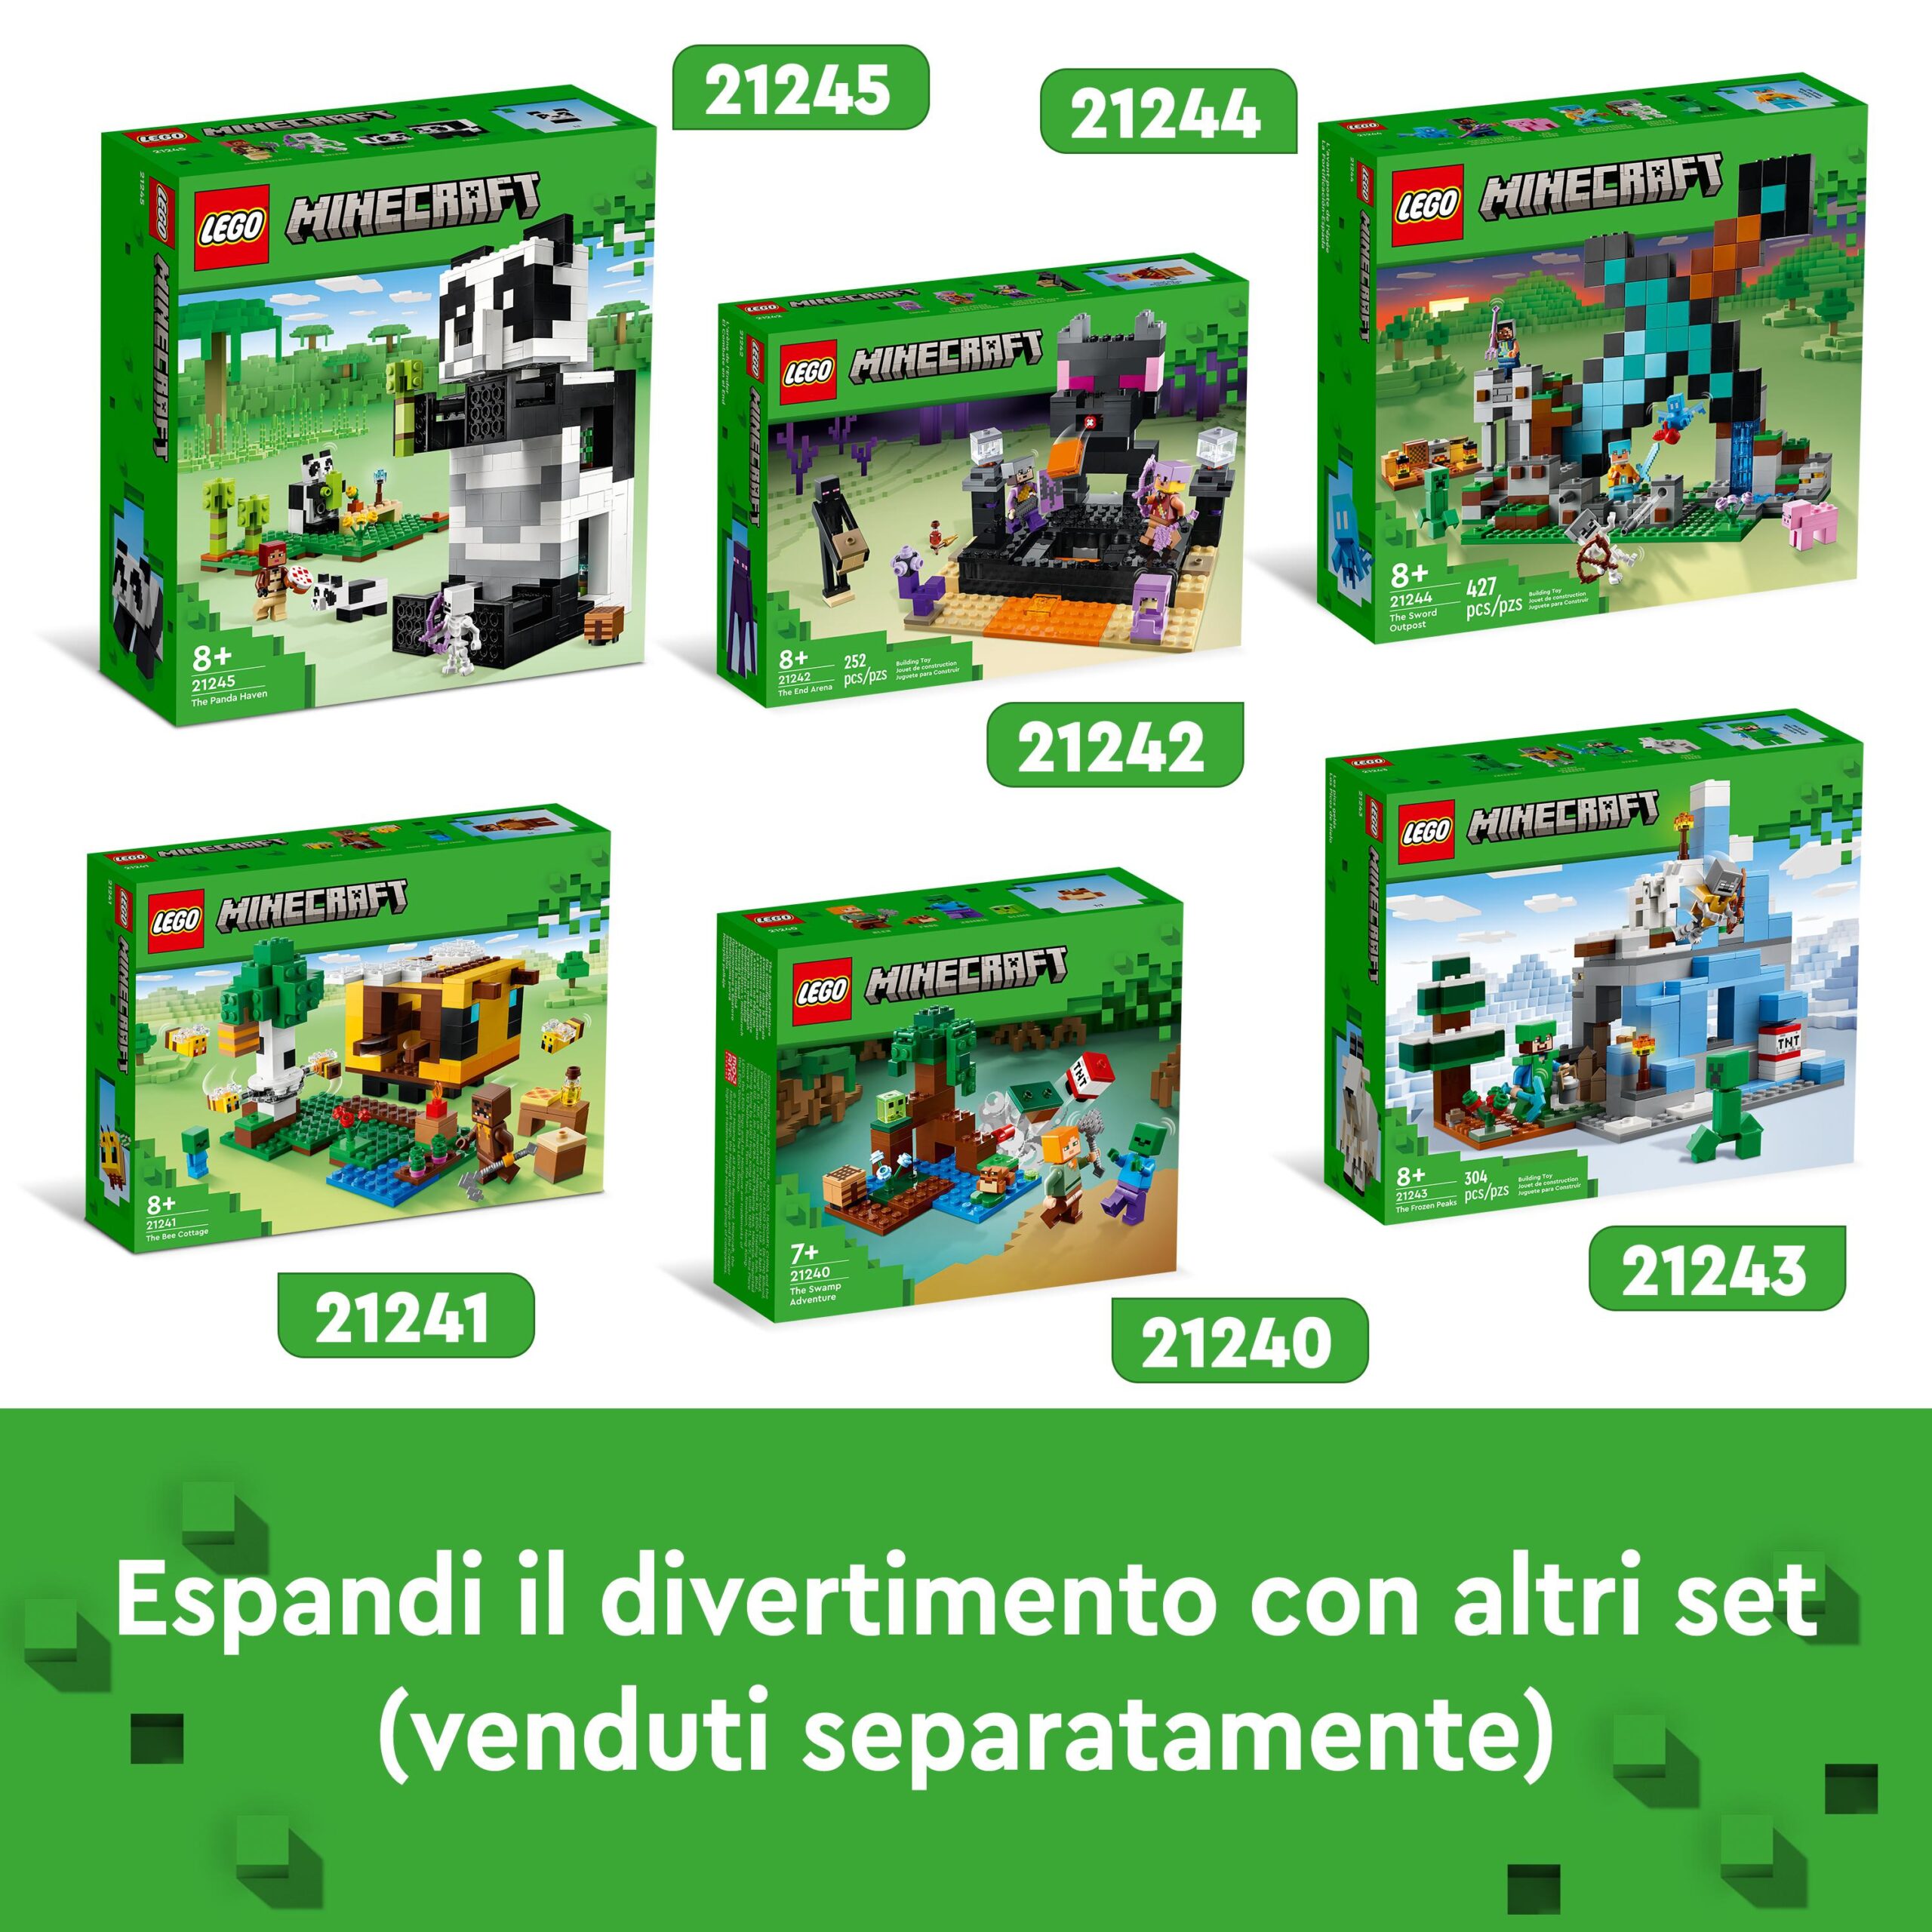 Lego minecraft 21245 il rifugio del panda, modellino da costruire di casa giocattolo, giochi per bambini, idea regalo - MINECRAFT